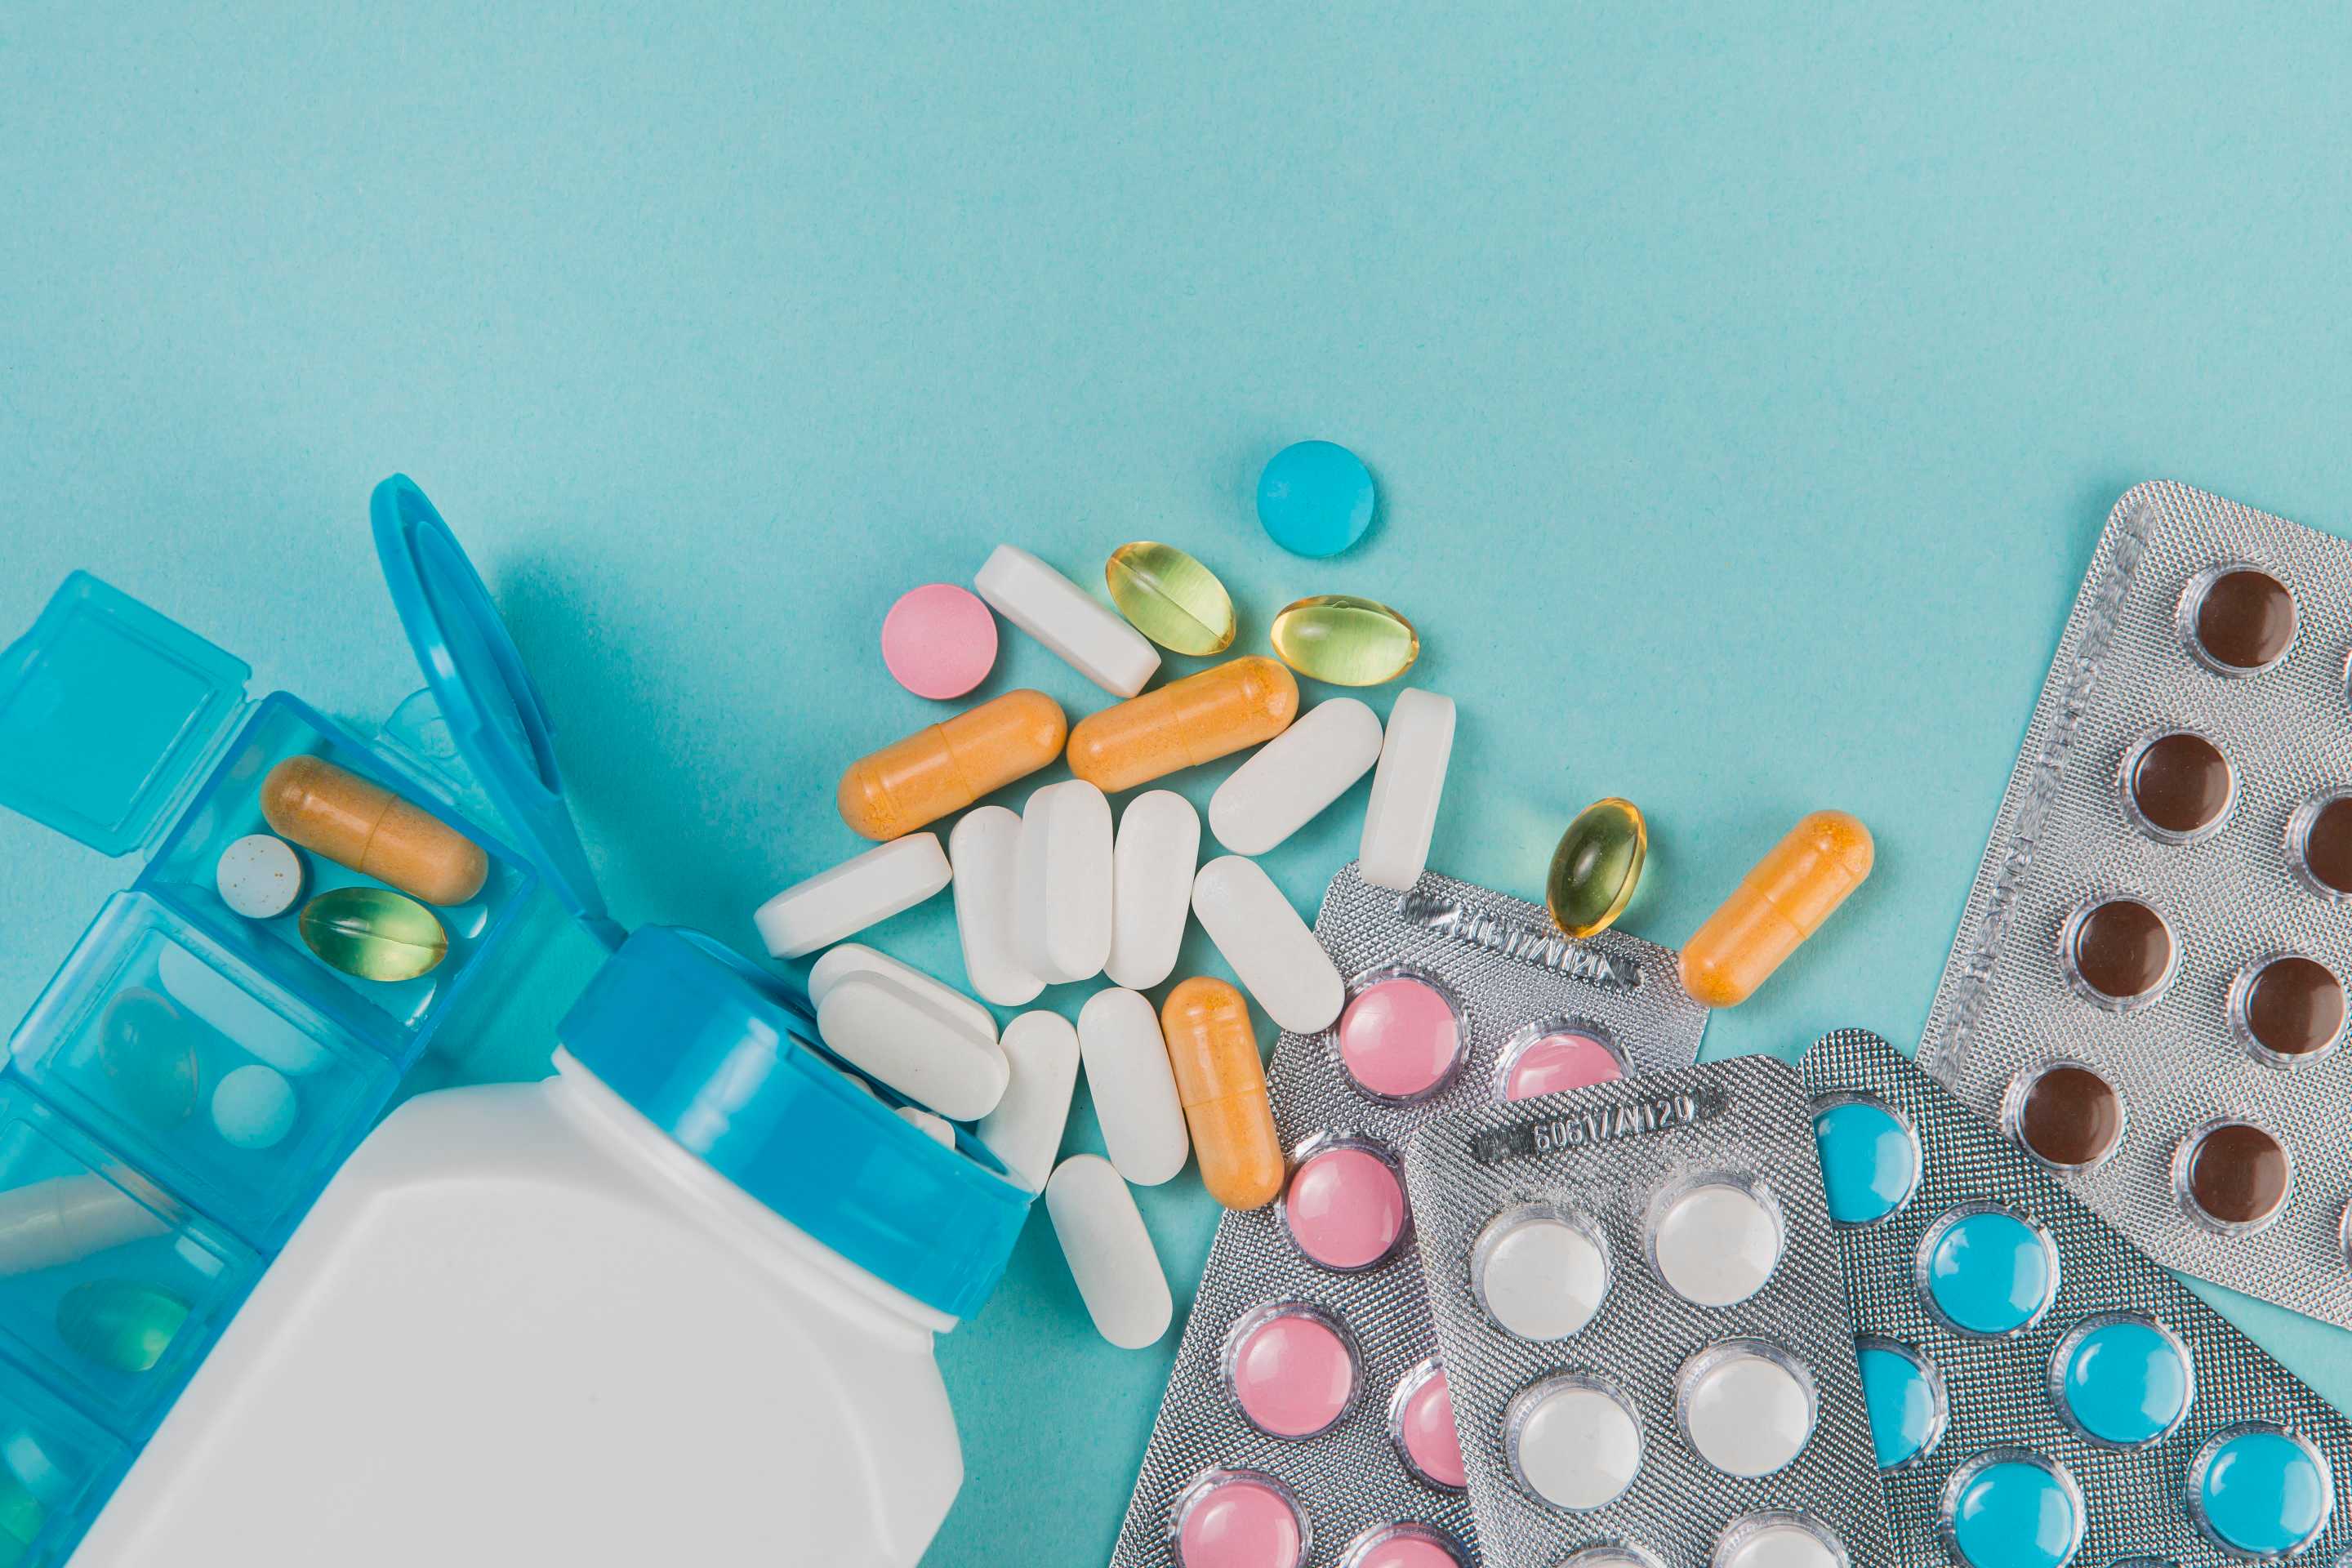 Un estudio realizado por la Clínica Cleveland, demuestra que el uso de la tecnología puede ayudar a garantizar un acceso seguro y eficaz a las estatinas sin receta